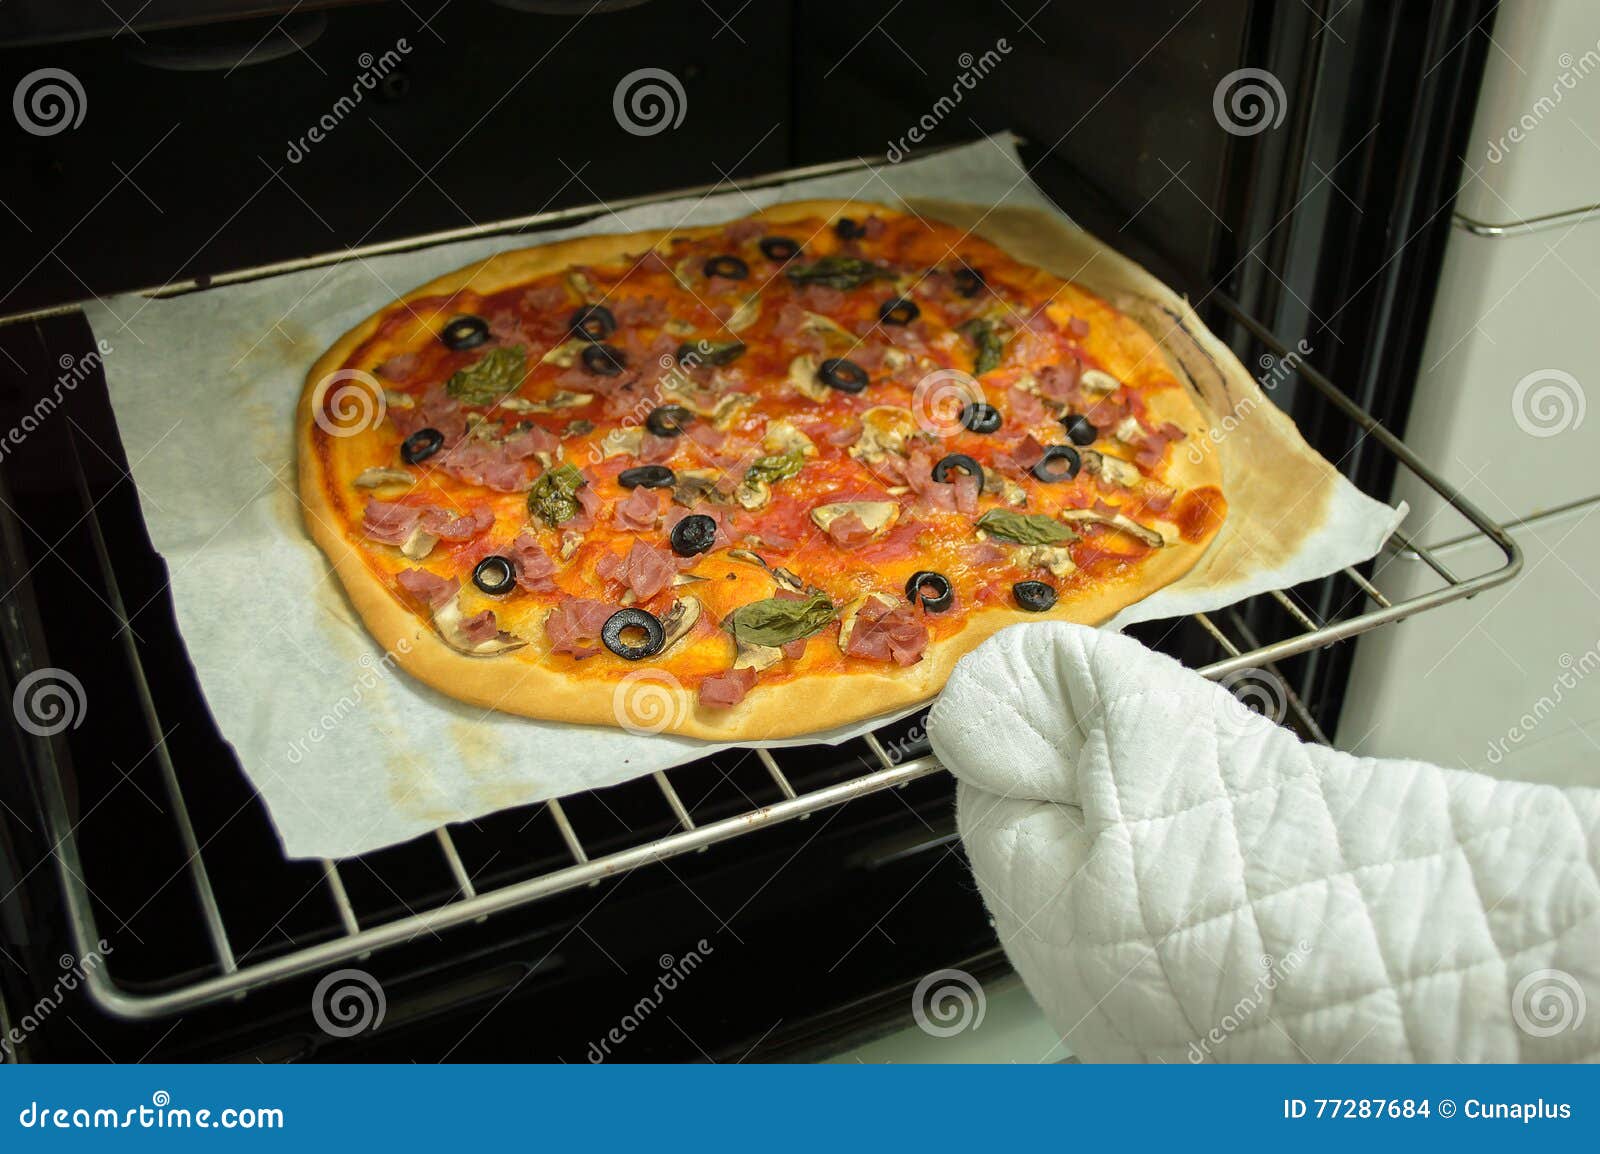 пересохла пицца в духовке что делать фото 18